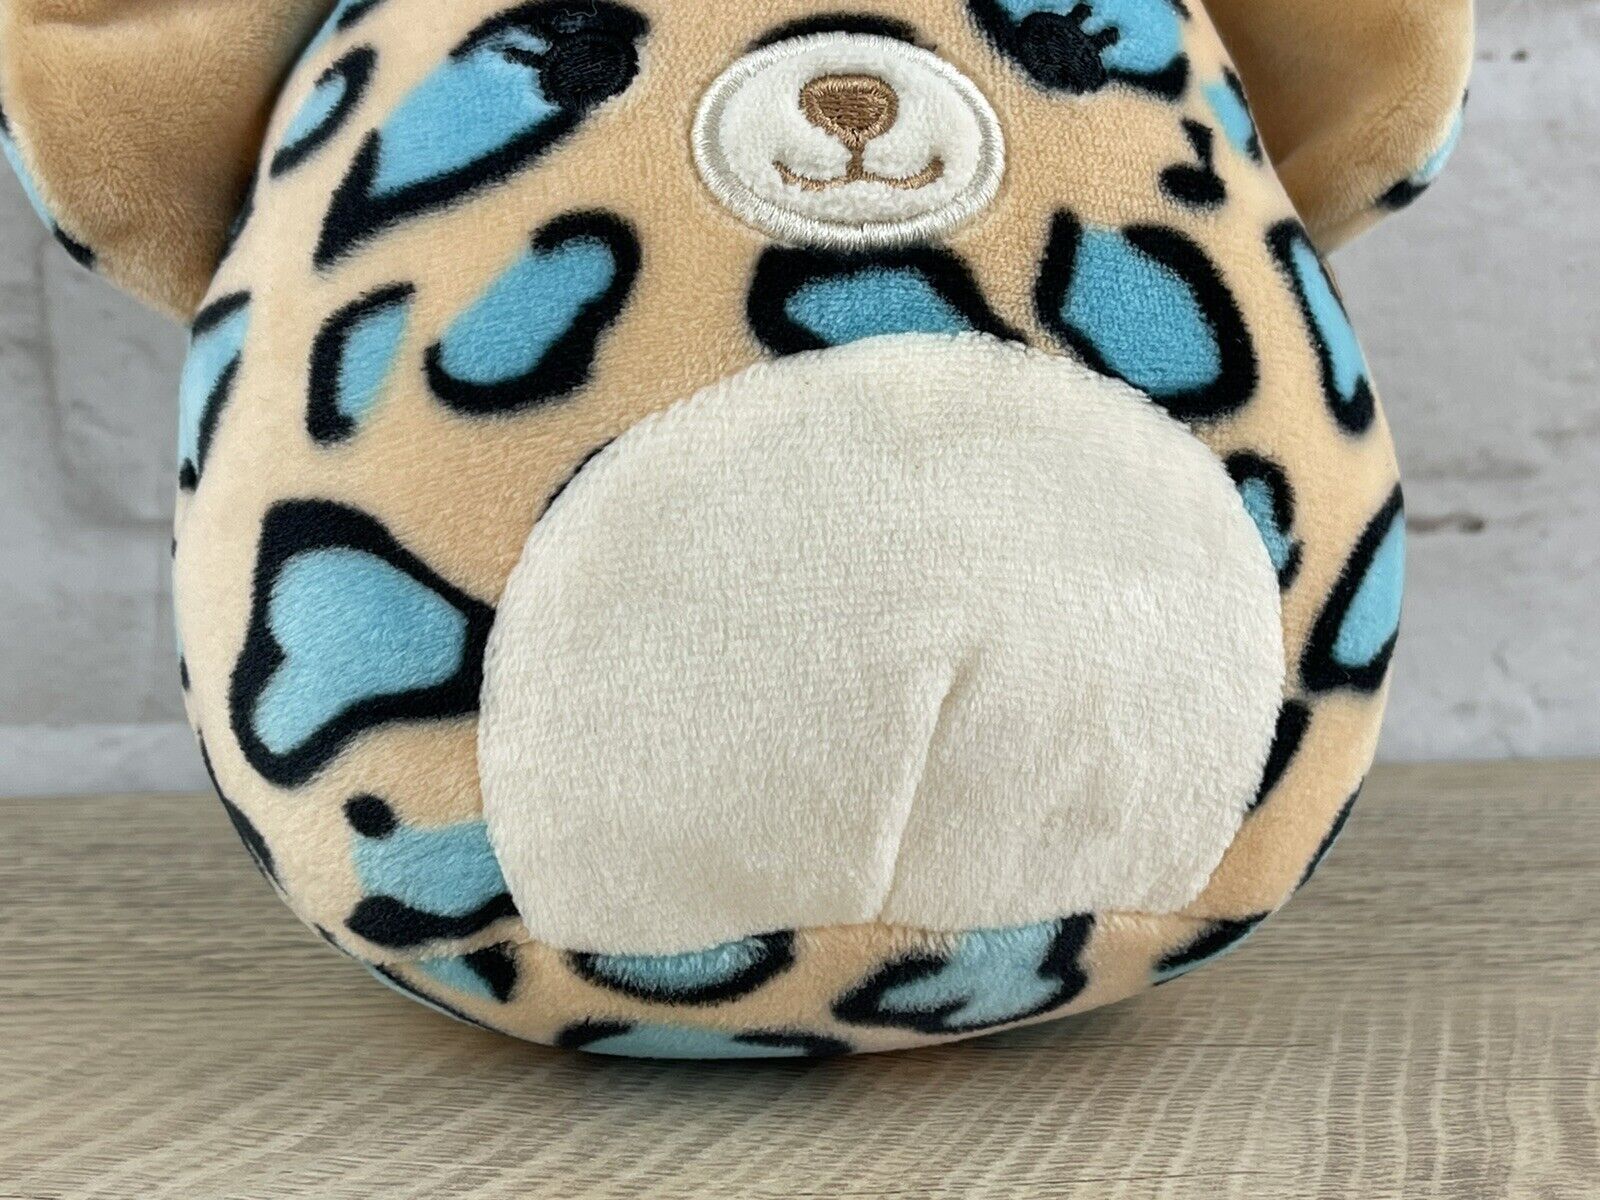 Squishmallow Mini 5” Cheetah Plush Peach & Teal Spots Squishy and Soft